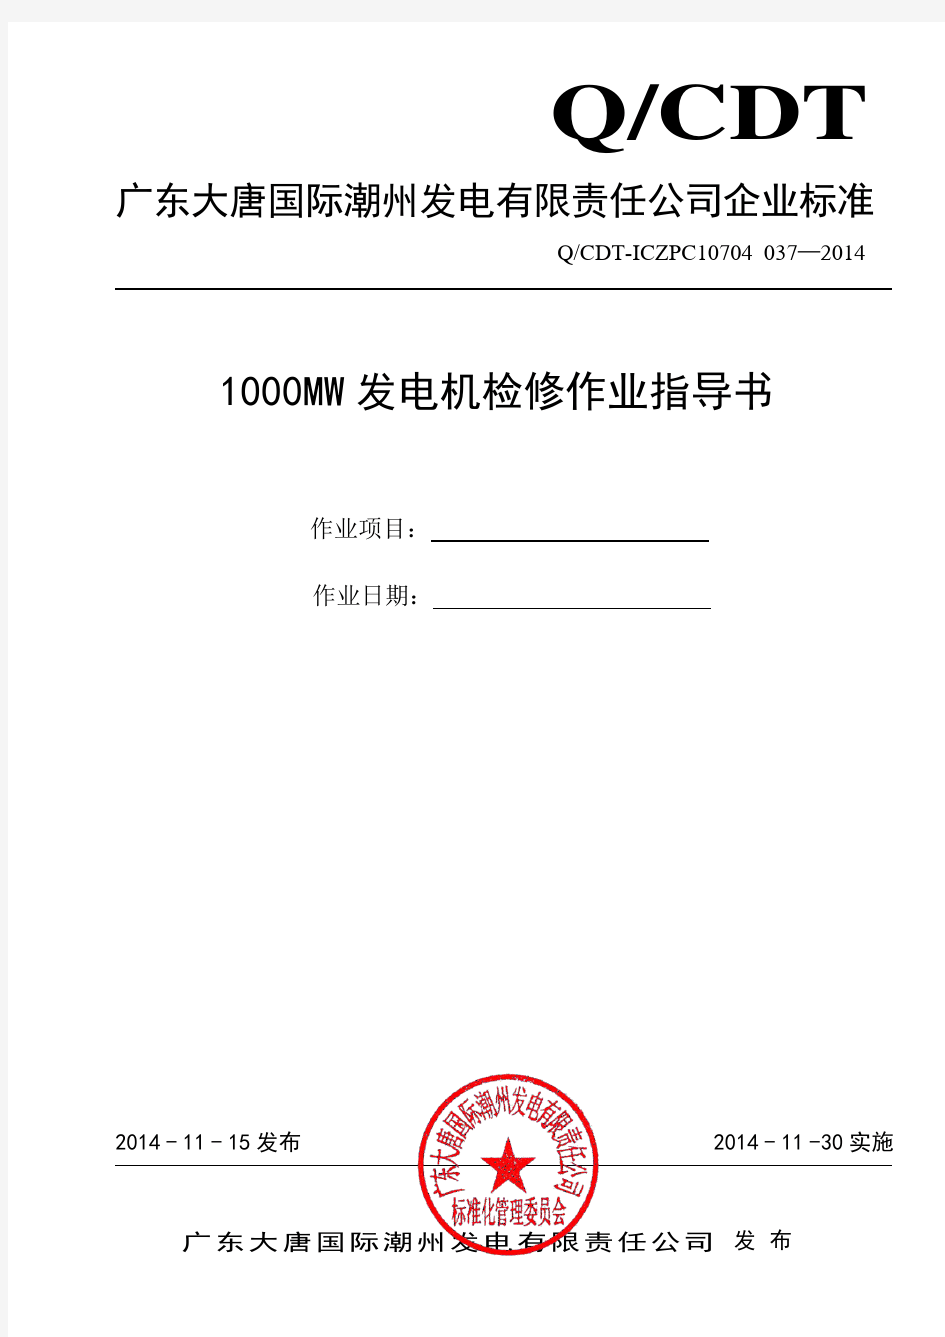 1000MW机组发电机检修作业指导书